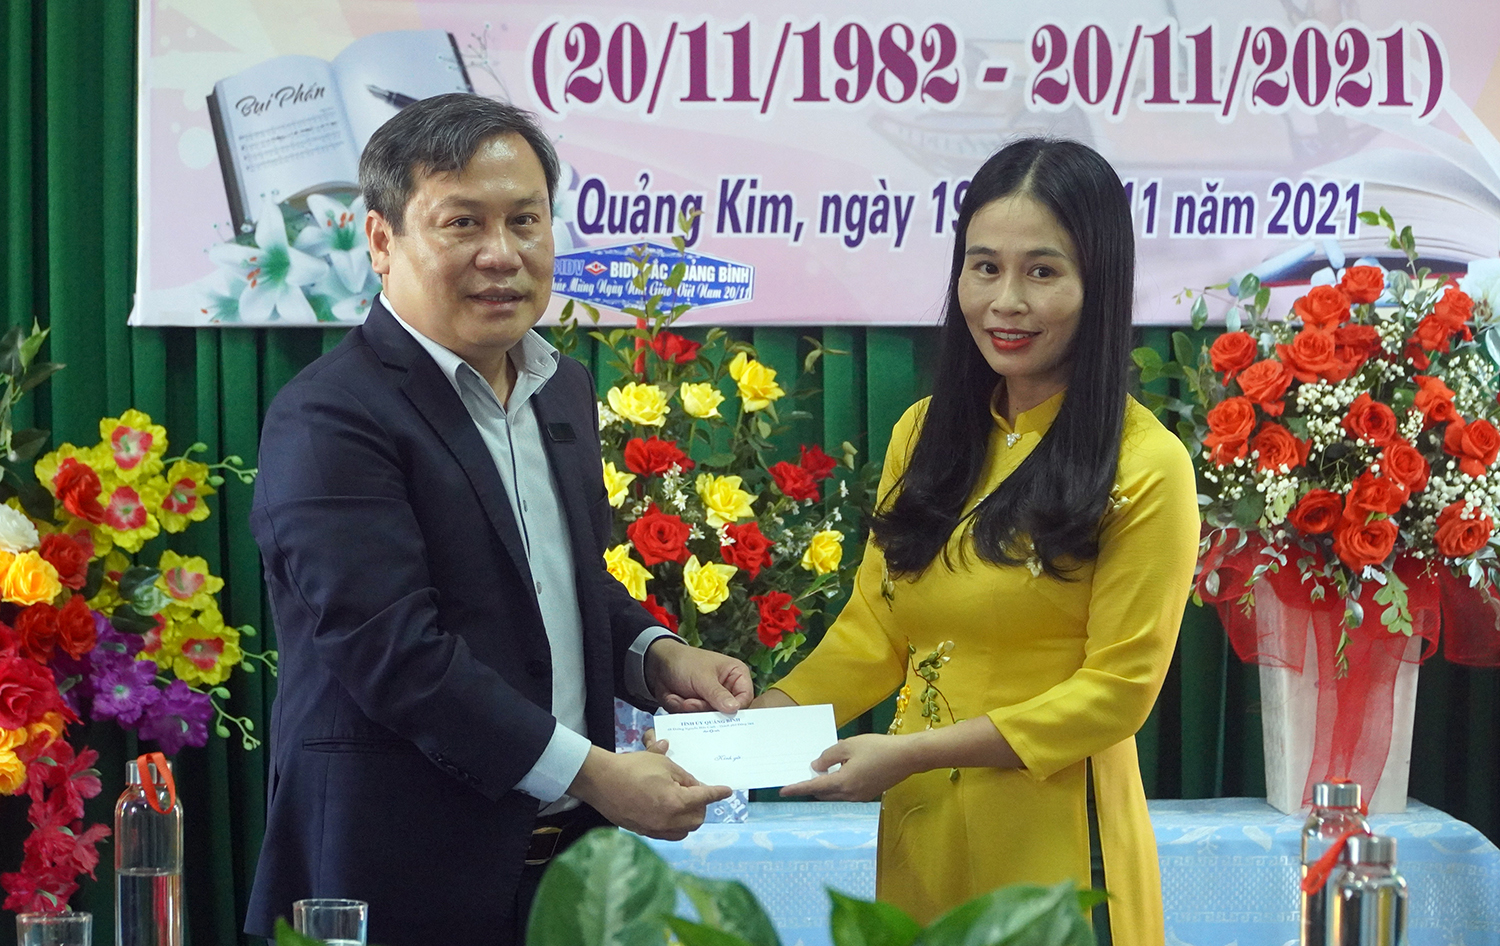 Đồng chí Bí thư Tỉnh ủy Vũ Đại Thắng tặng quà cho cán bộ, giáo viên Trường THCS Quảng Kim.